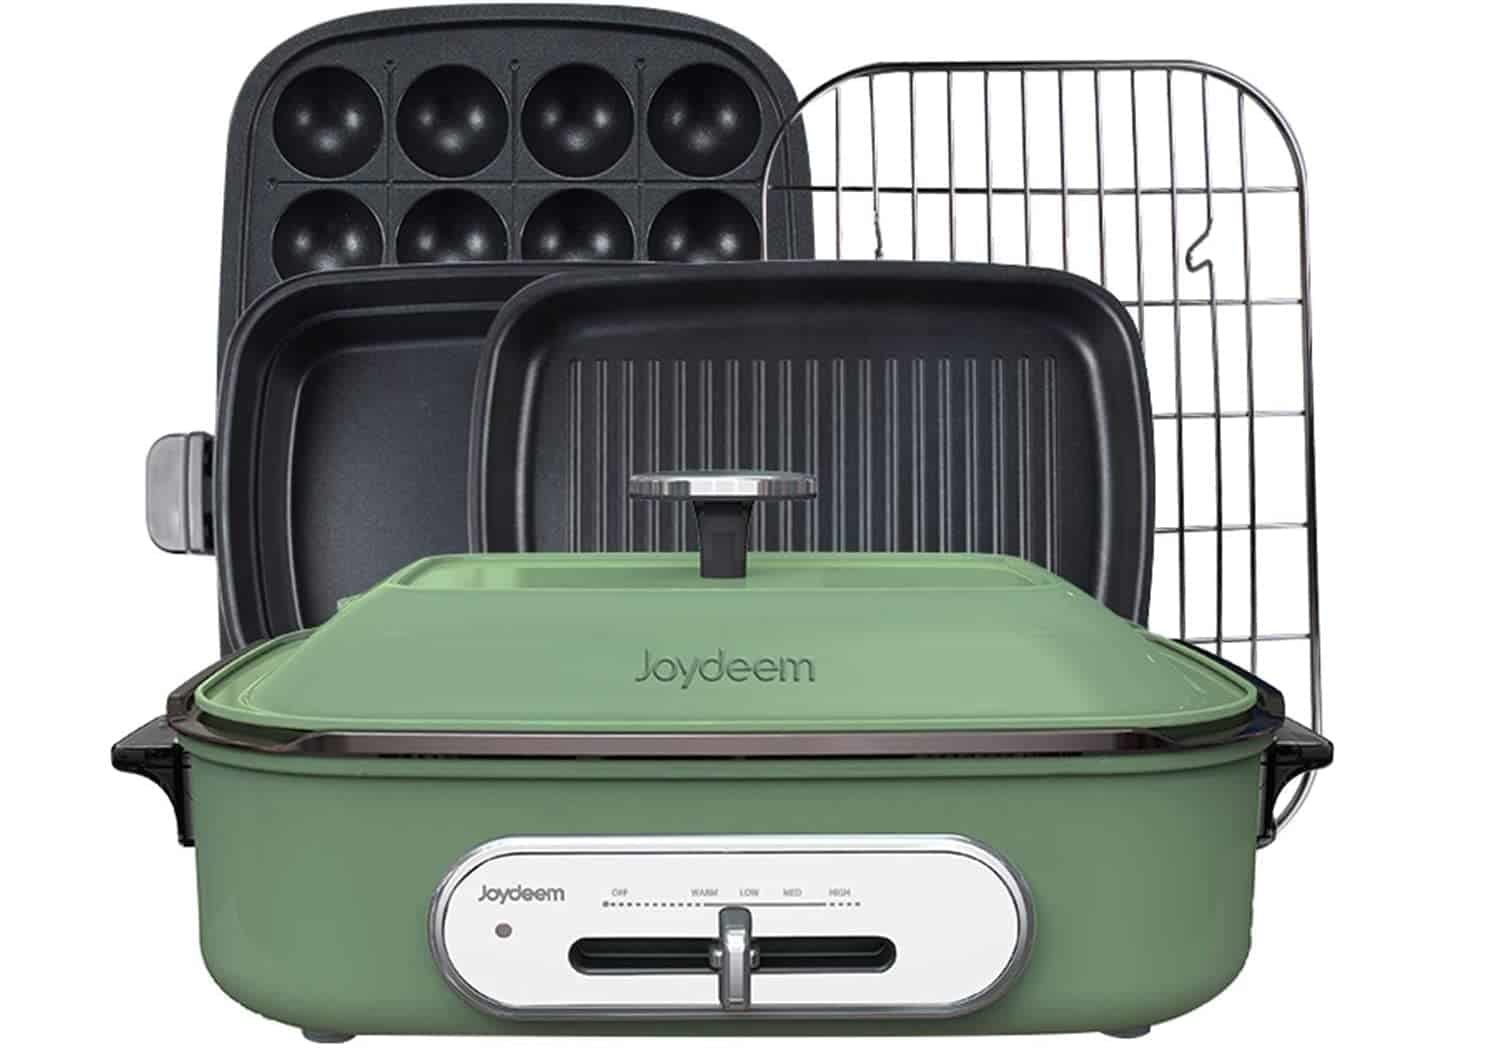 Best multi-purpose Takoyaki baking machine: Joydeem Compact Hot Plate